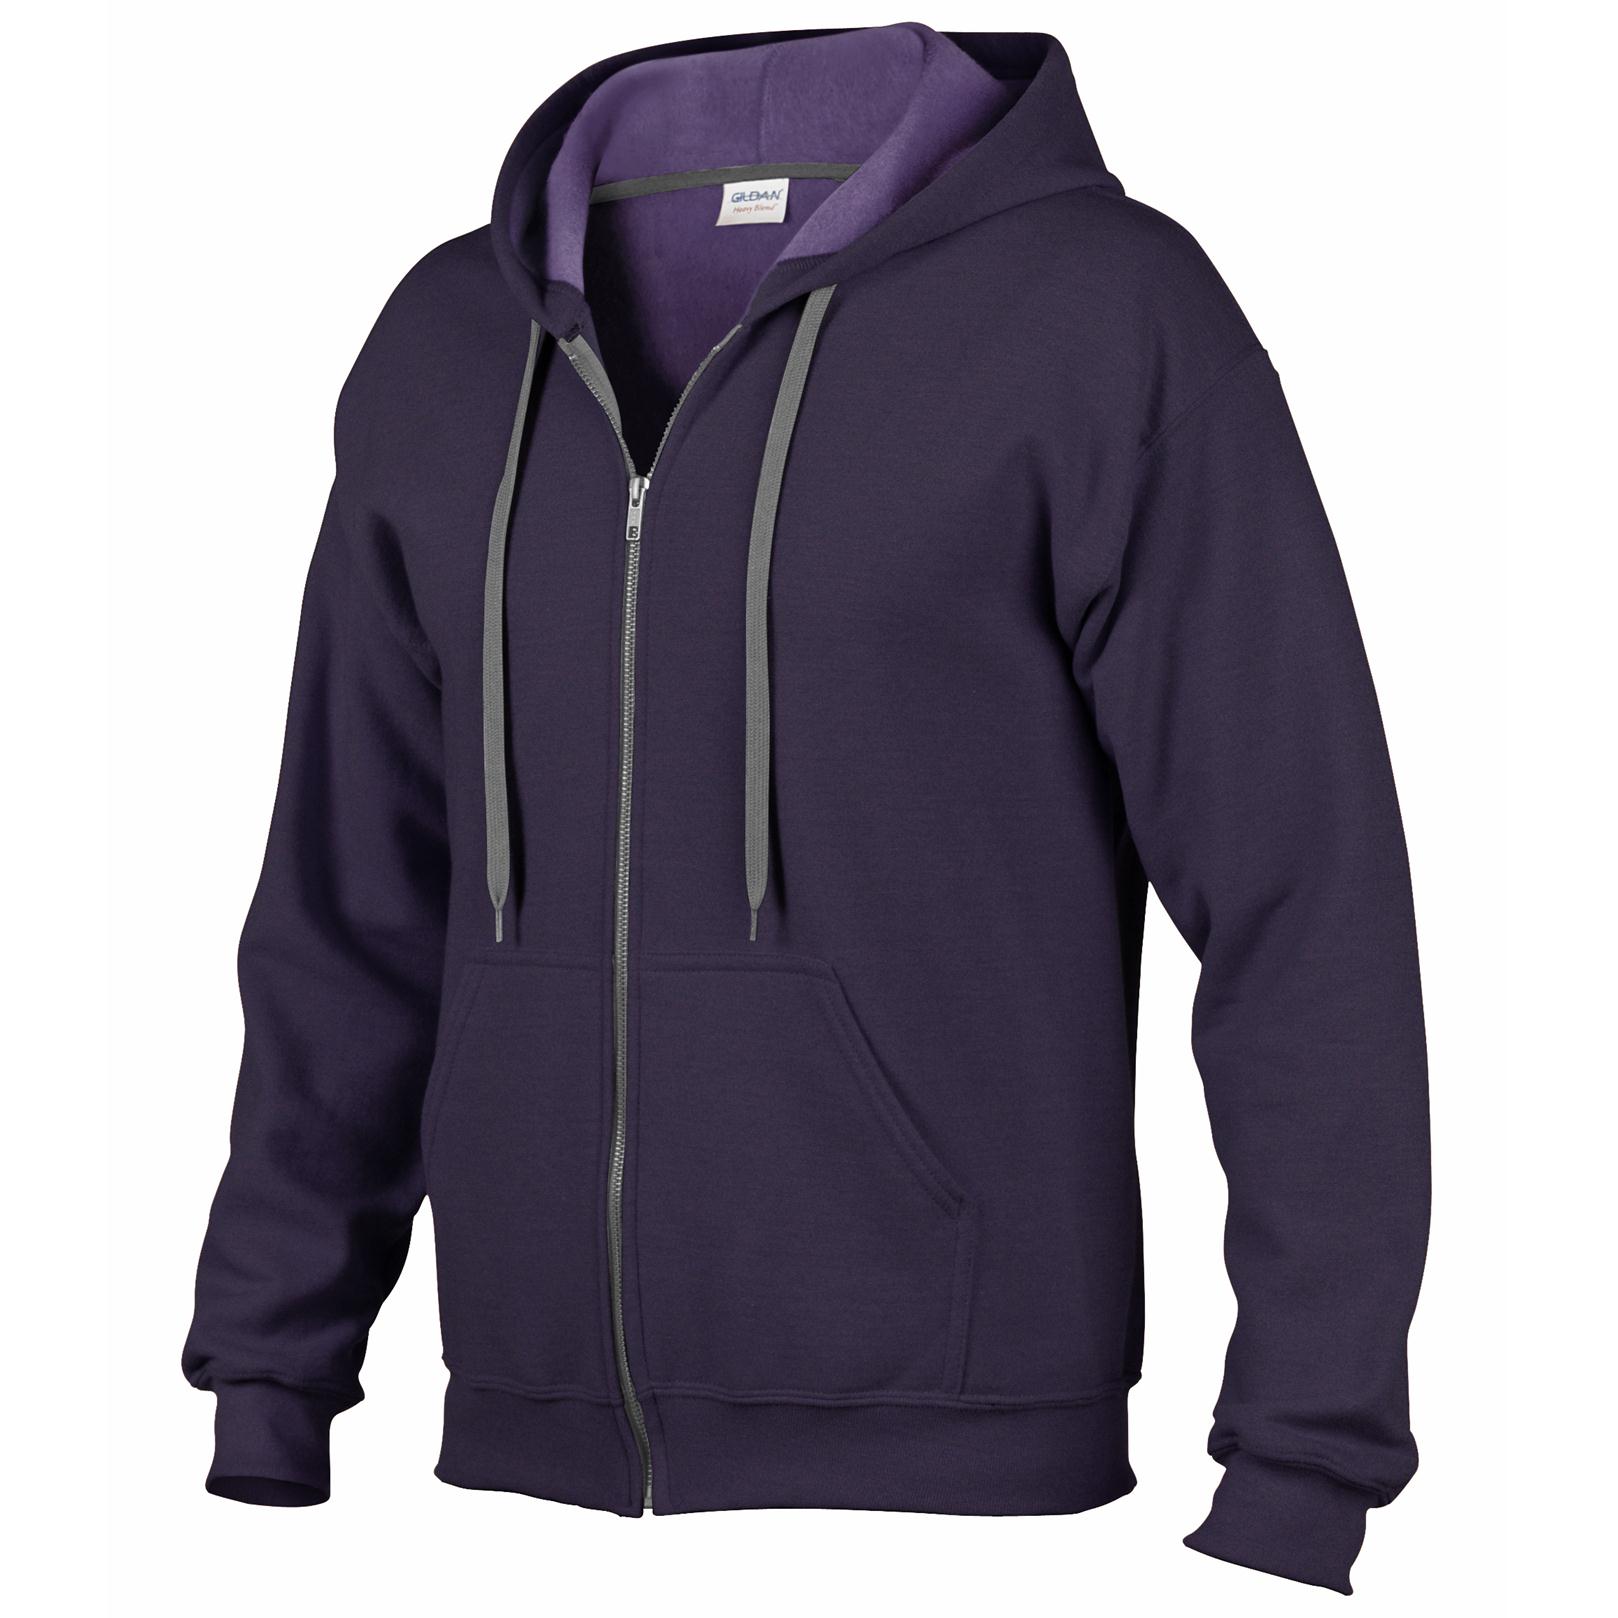 321+ Full-Zip Hooded Sweatshirt Front View Of Hoodie Best Quality ...